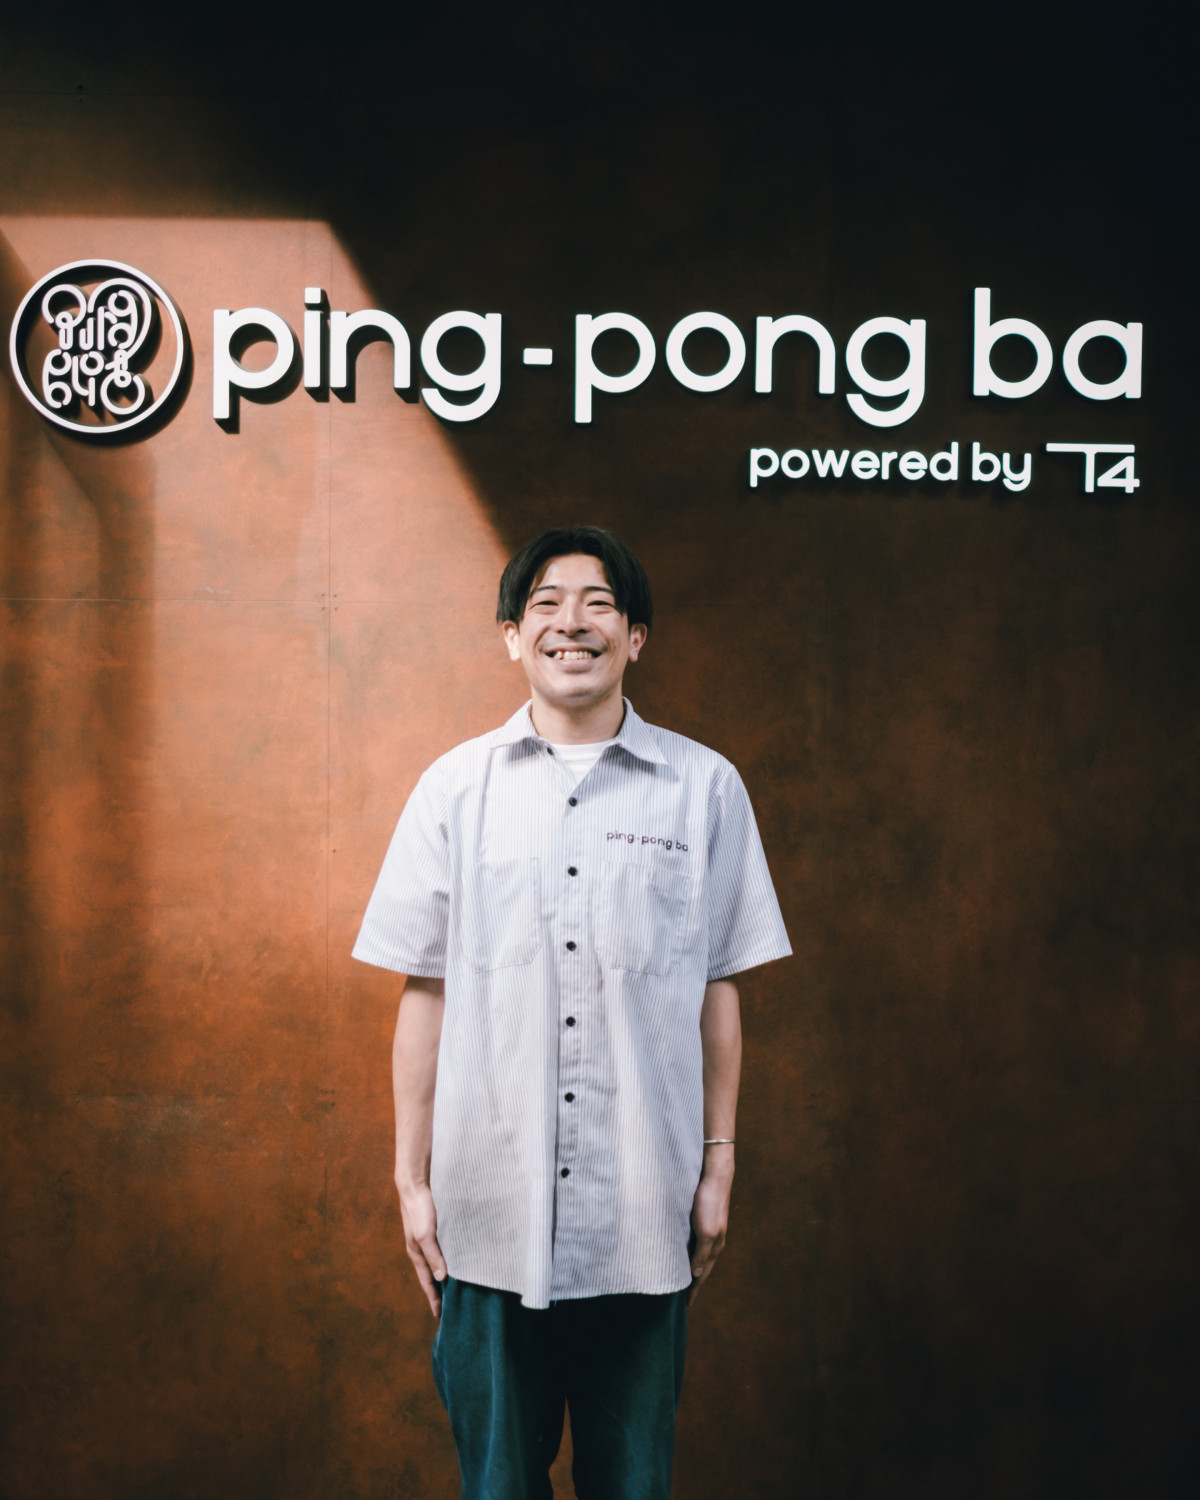 ping-pong ba ケイスケさん